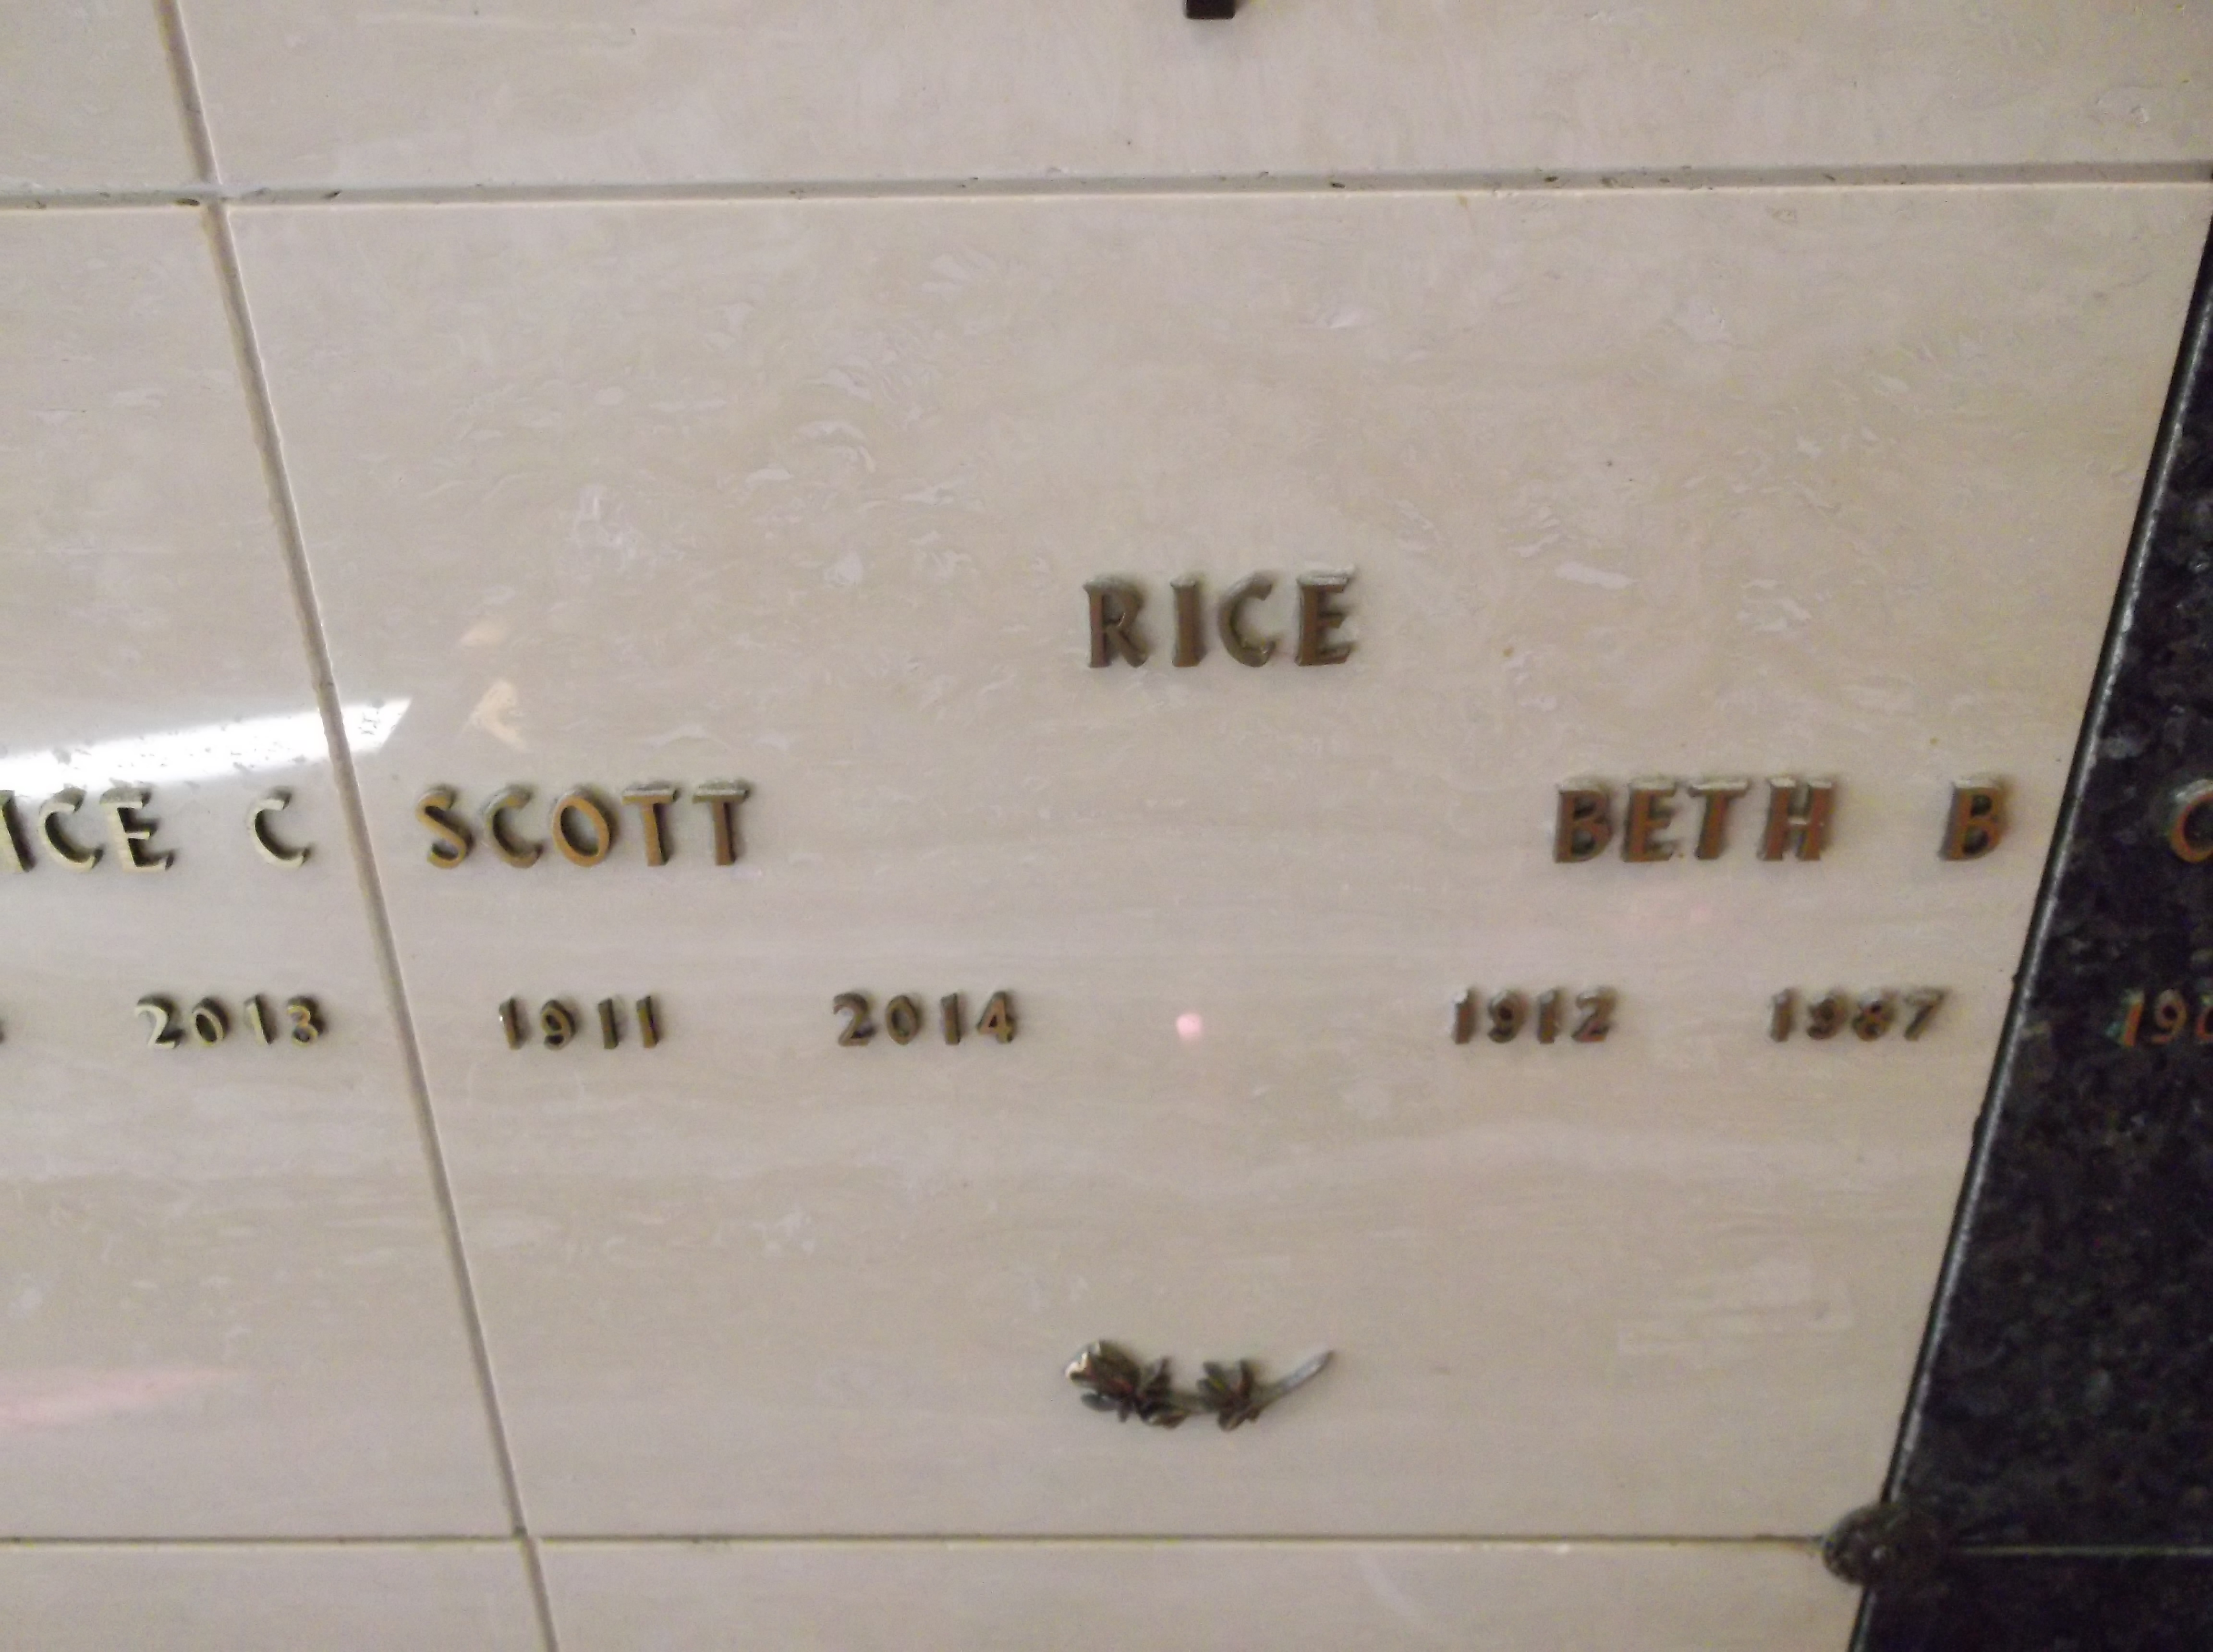 Scott Rice